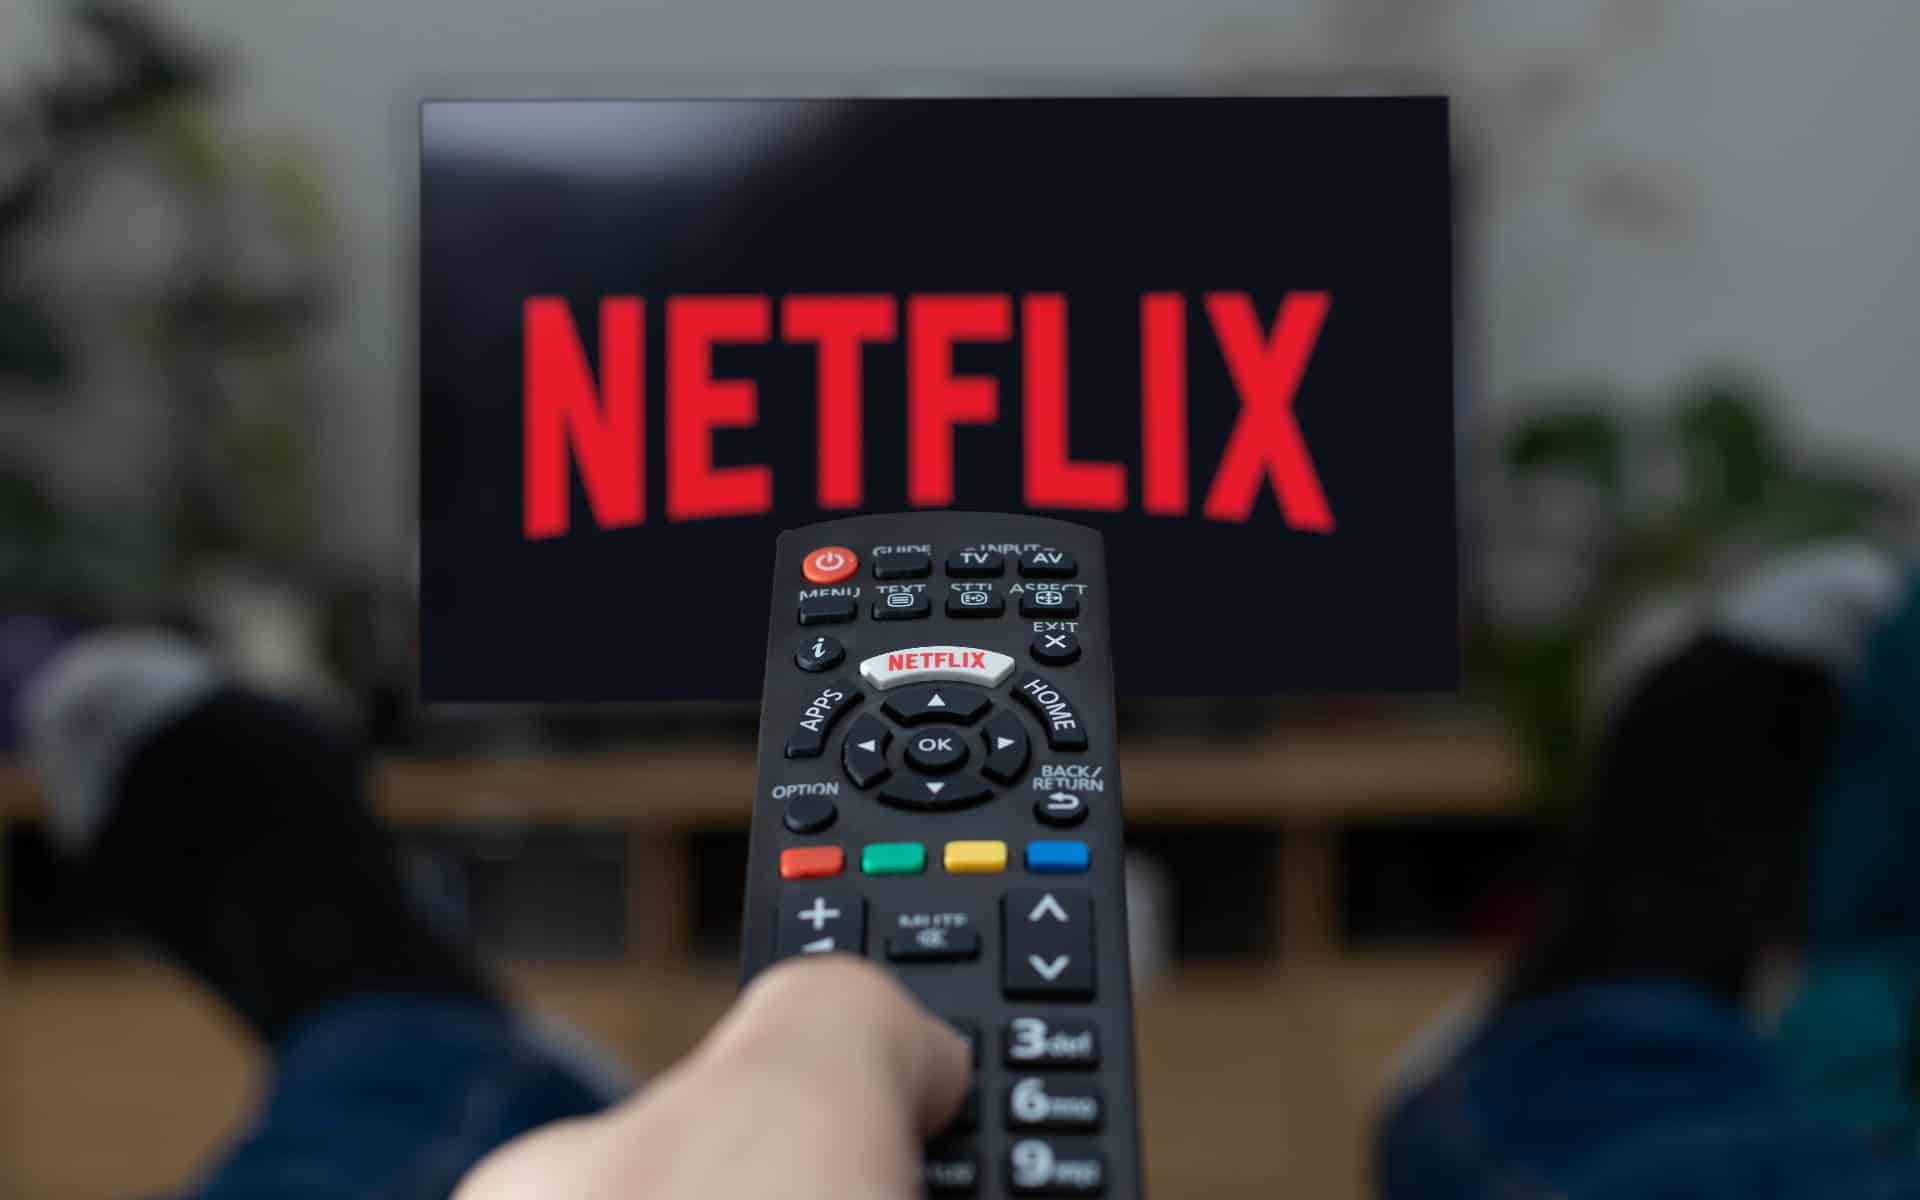 Netflix encerra plano básico, opção de assinatura sem anúncios